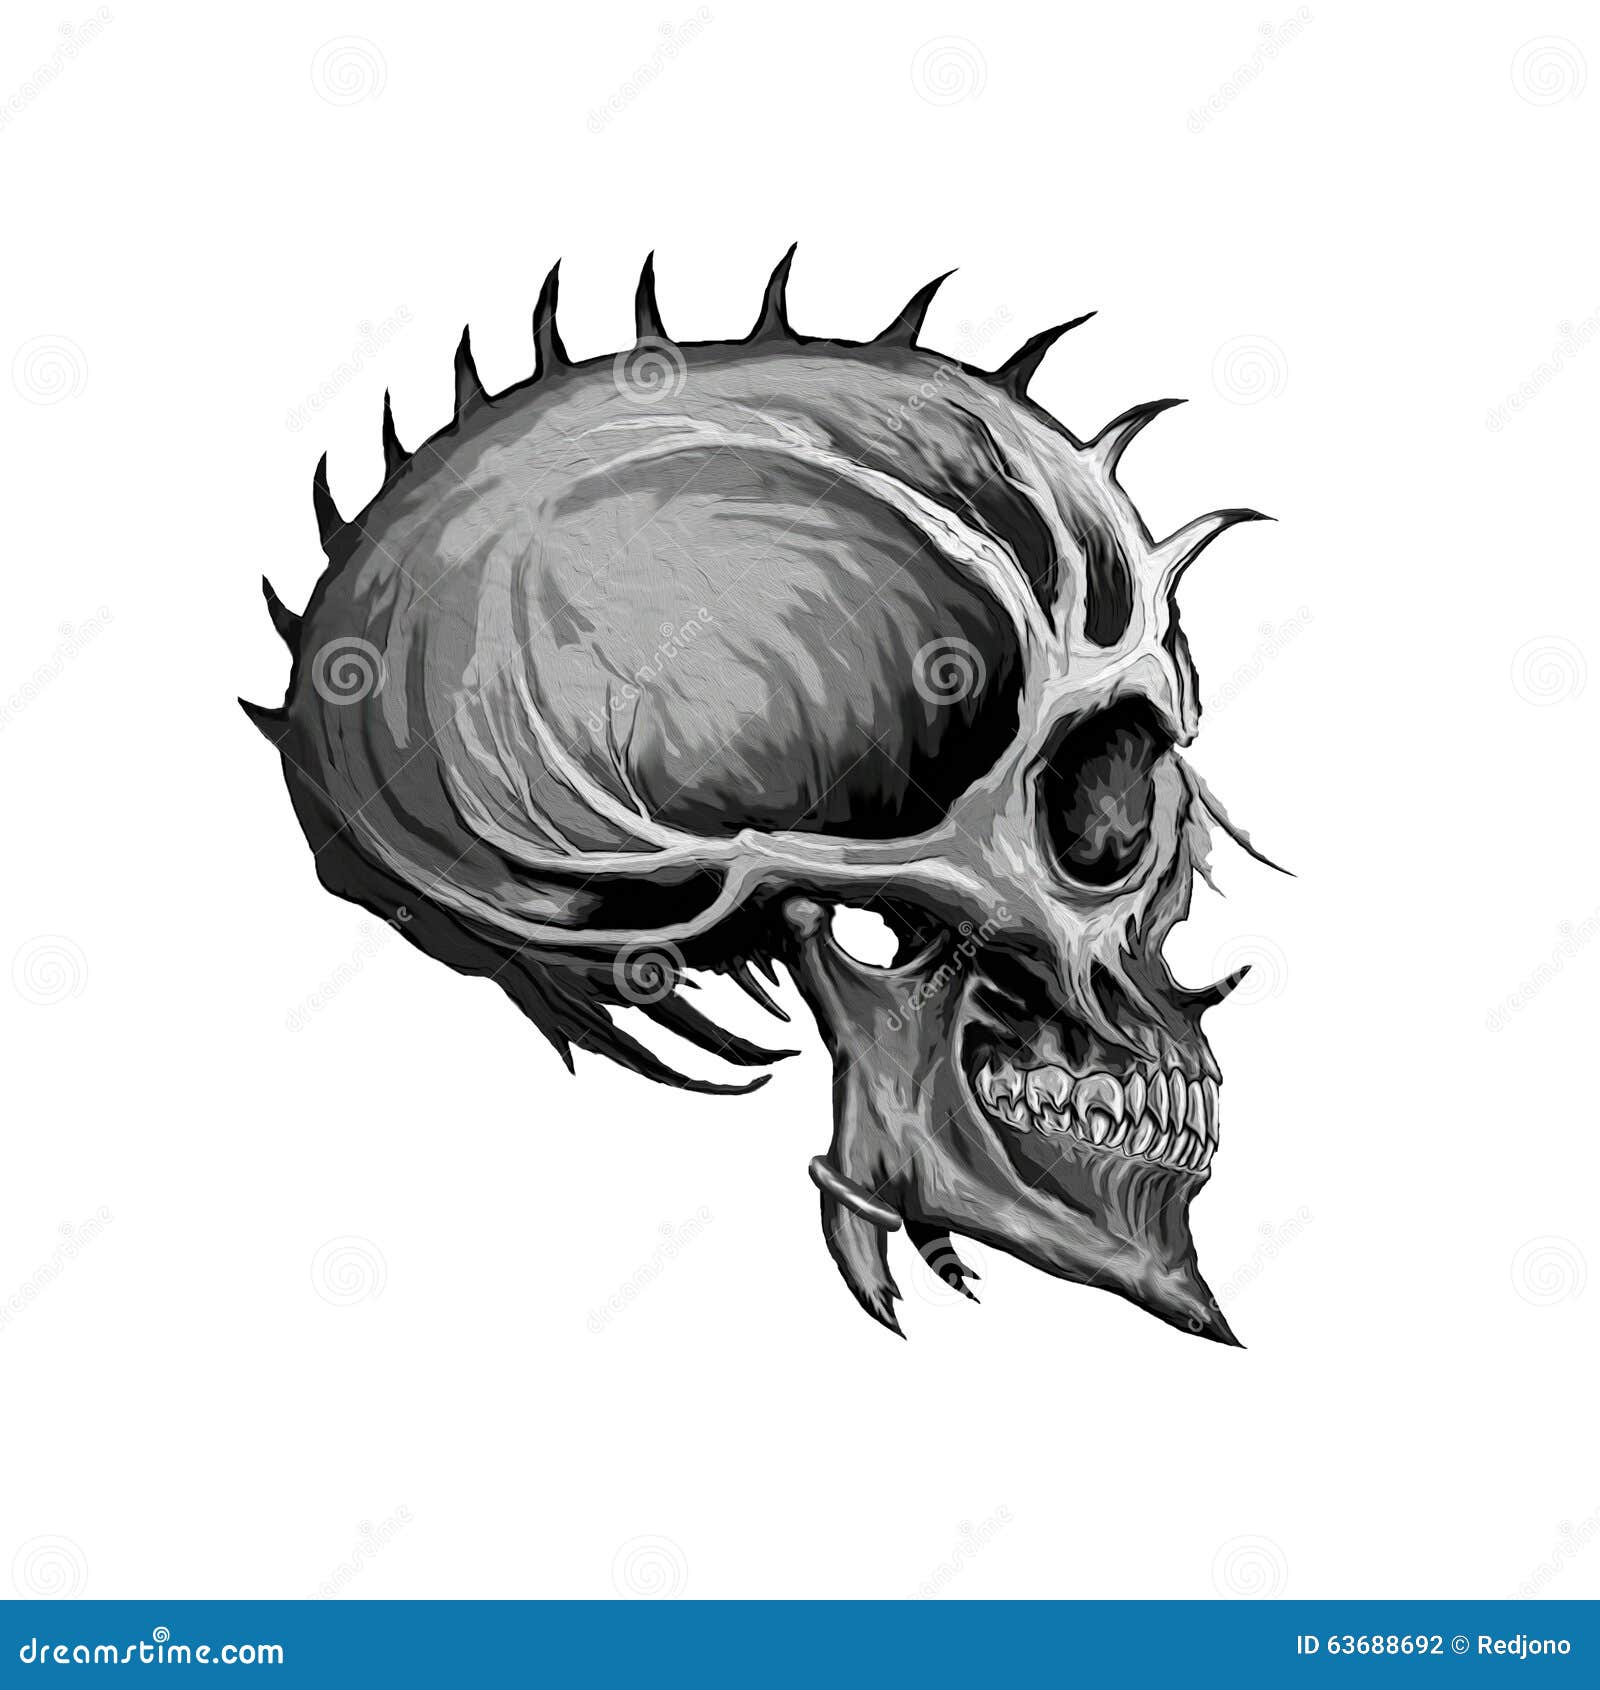 5100 Evil Skull Tattoo Designs Drawing Illustrations RoyaltyFree Vector  Graphics  Clip Art  iStock